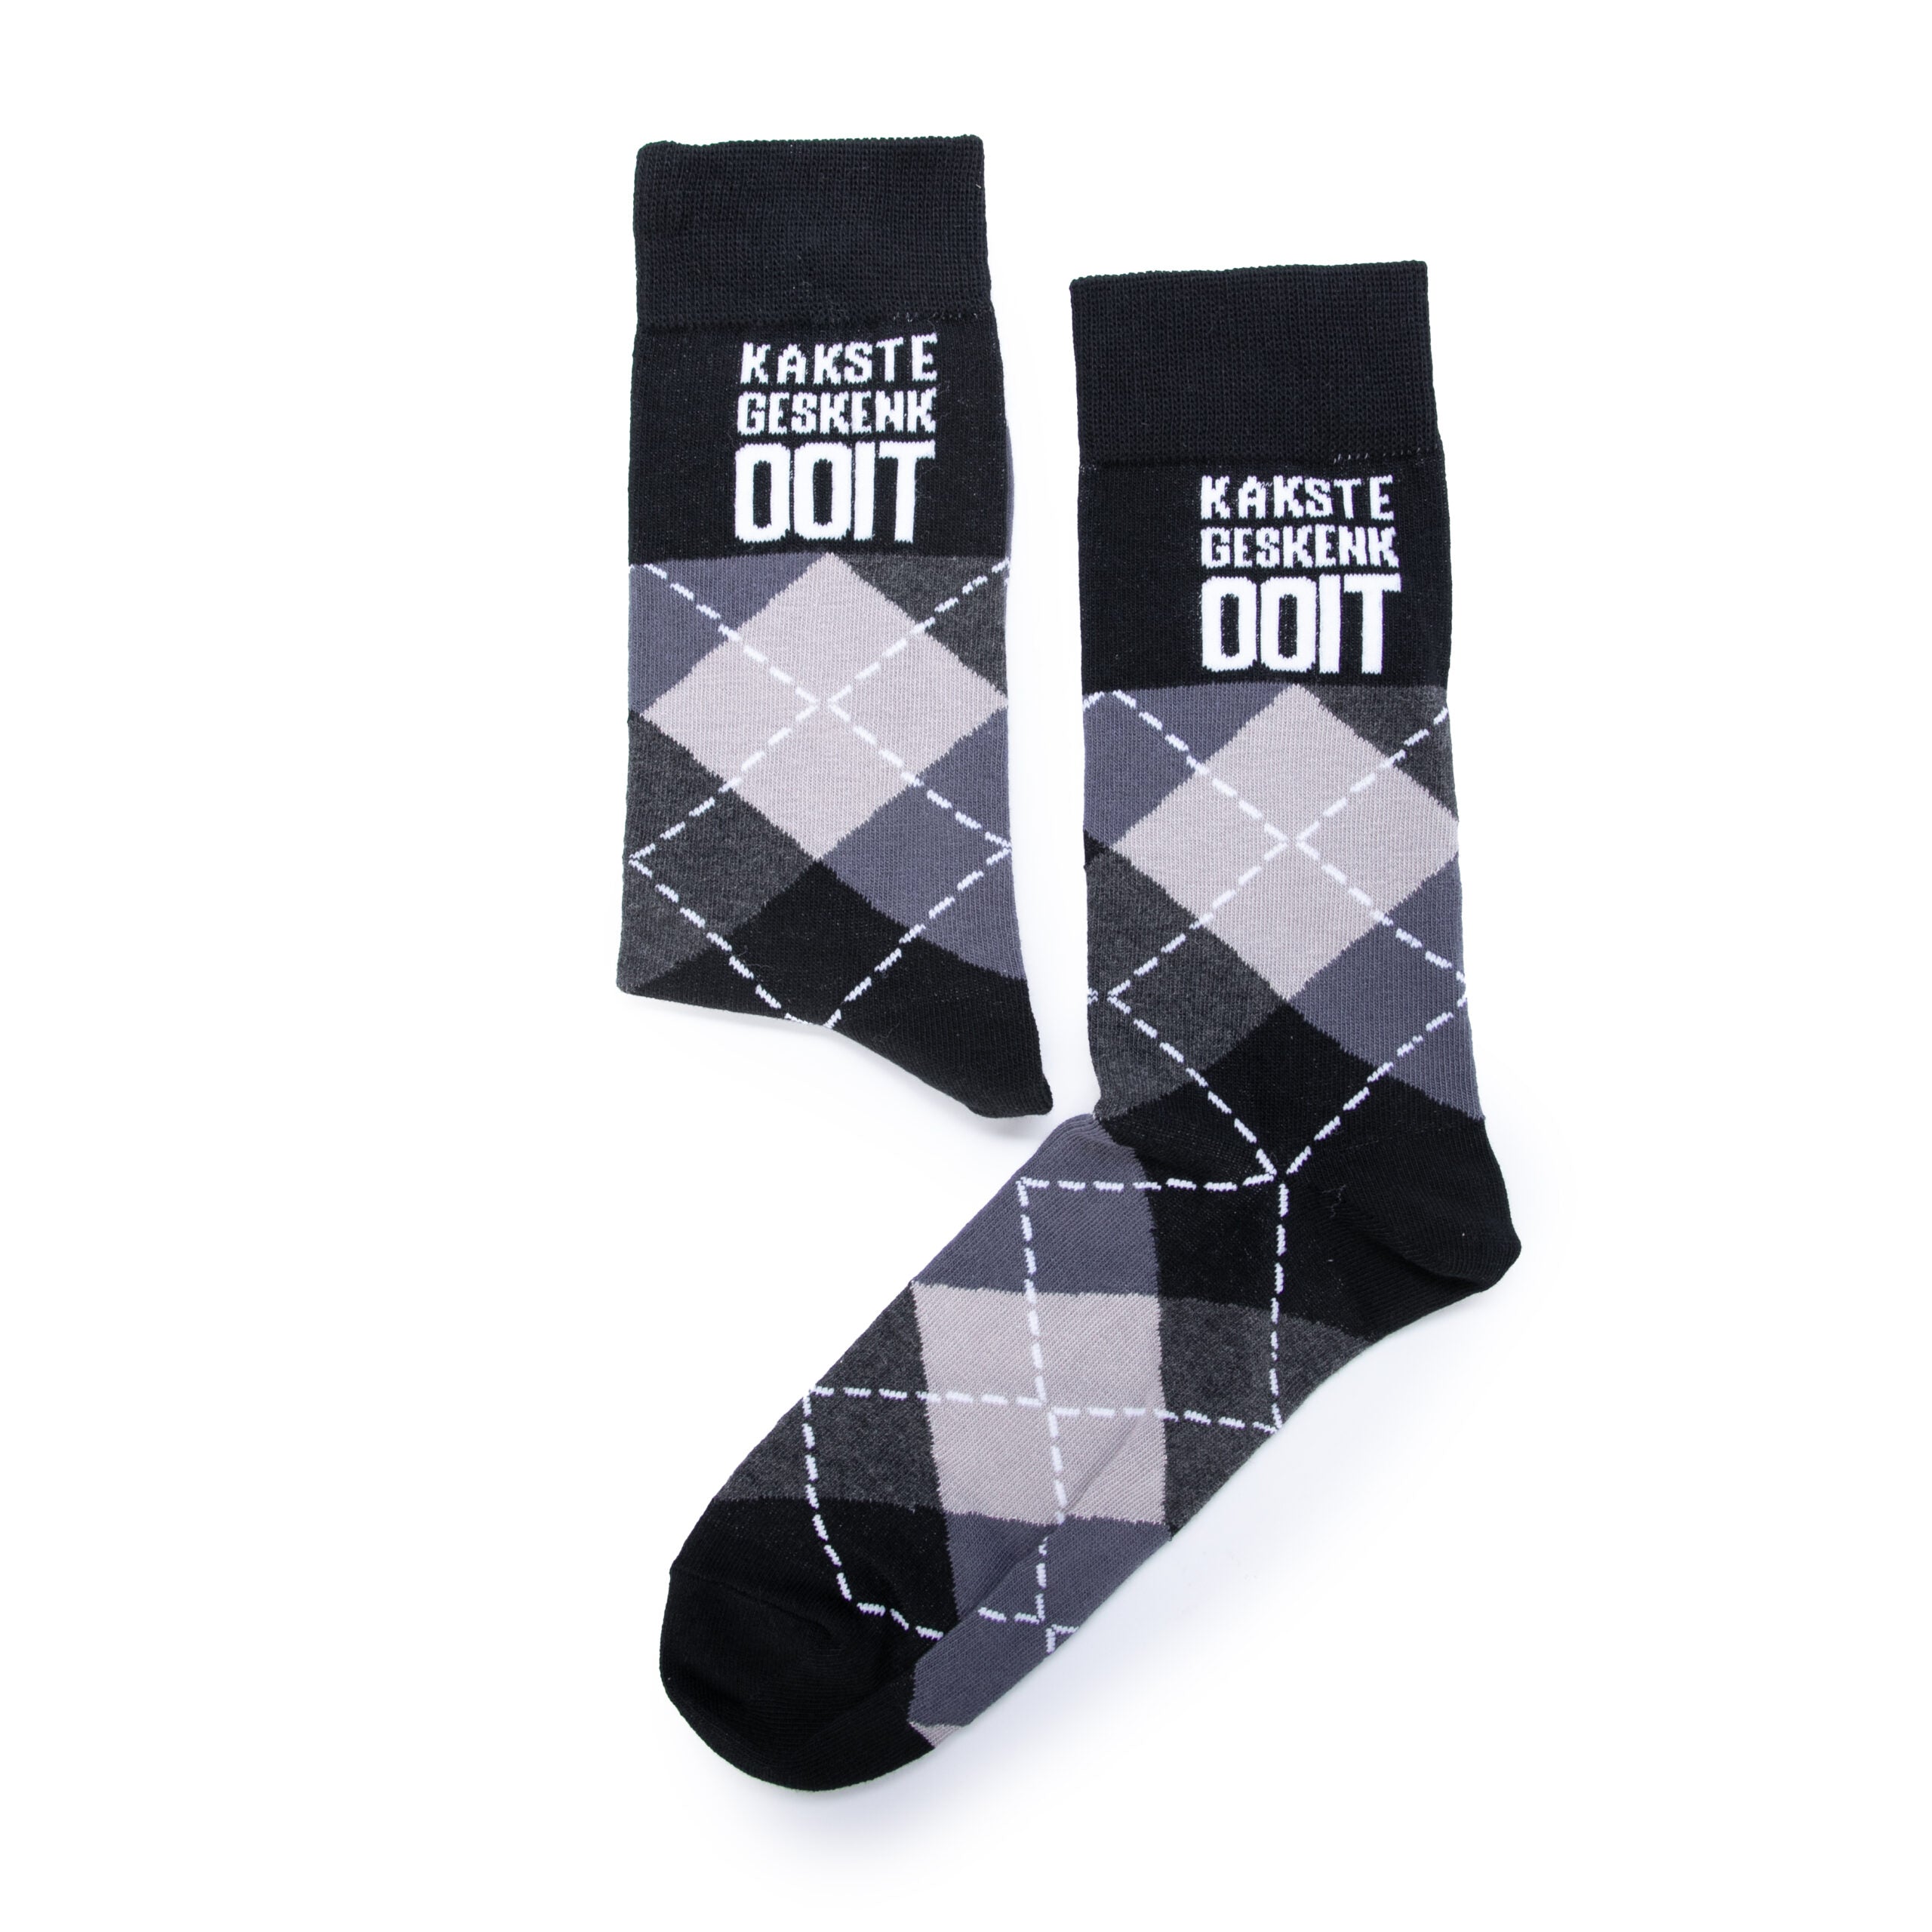 “Kakste Geskenk Ooit” Socks (new design!)